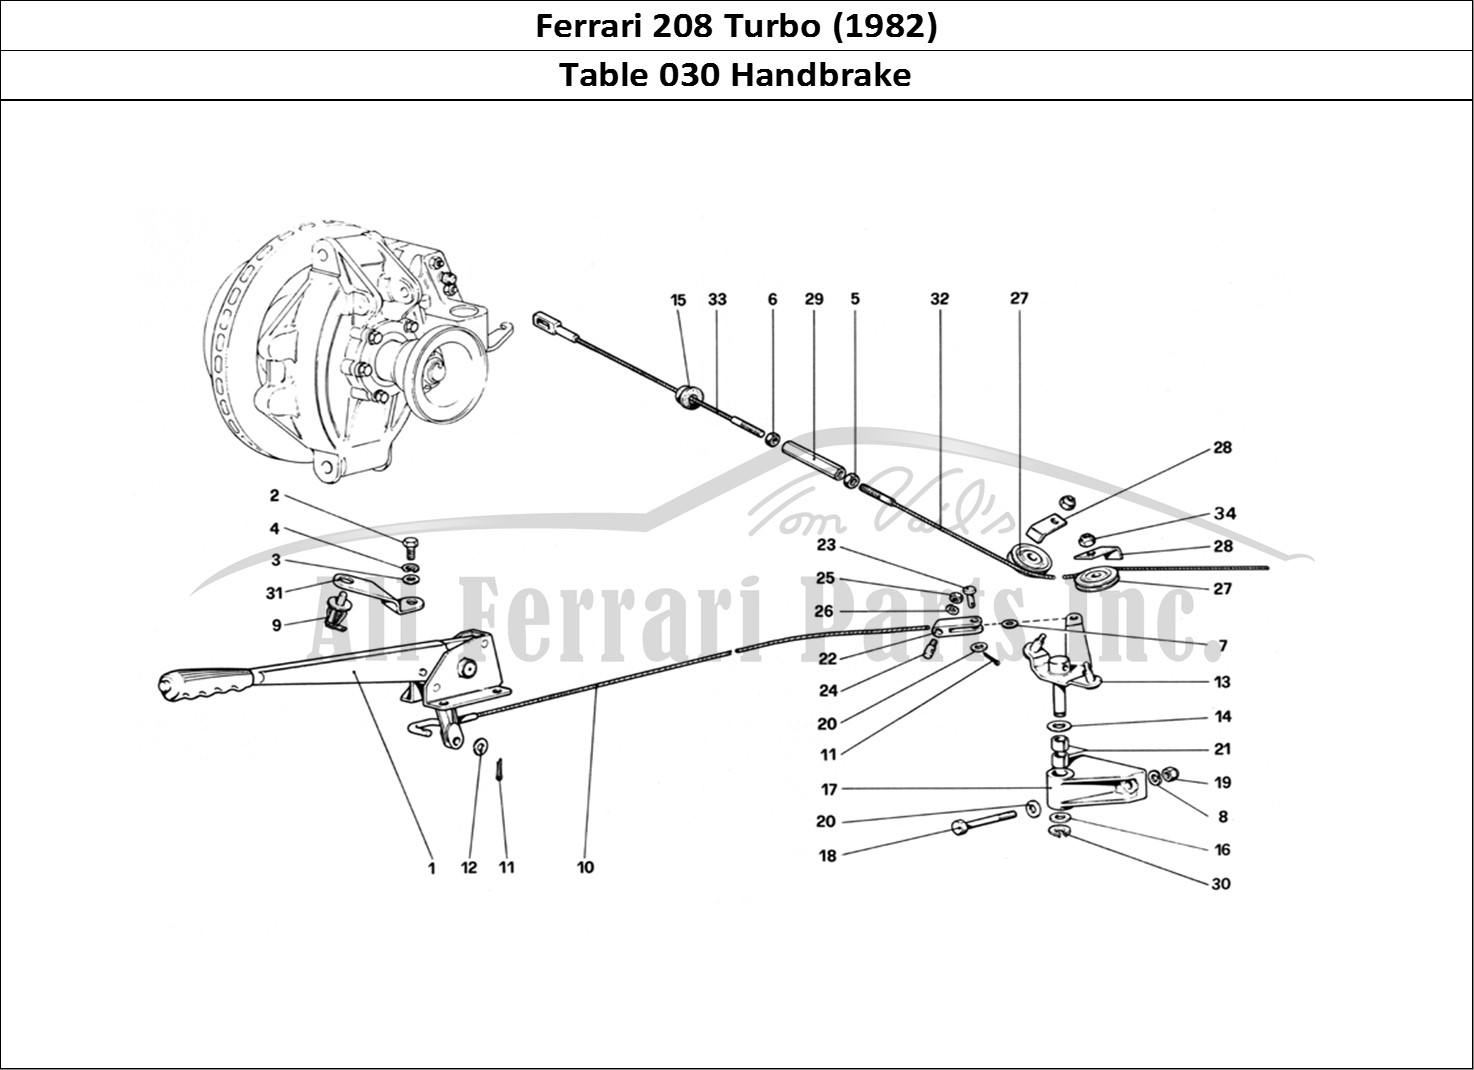 Ferrari Parts Ferrari 208 Turbo (1982) Page 030 Hand-Brake Controll